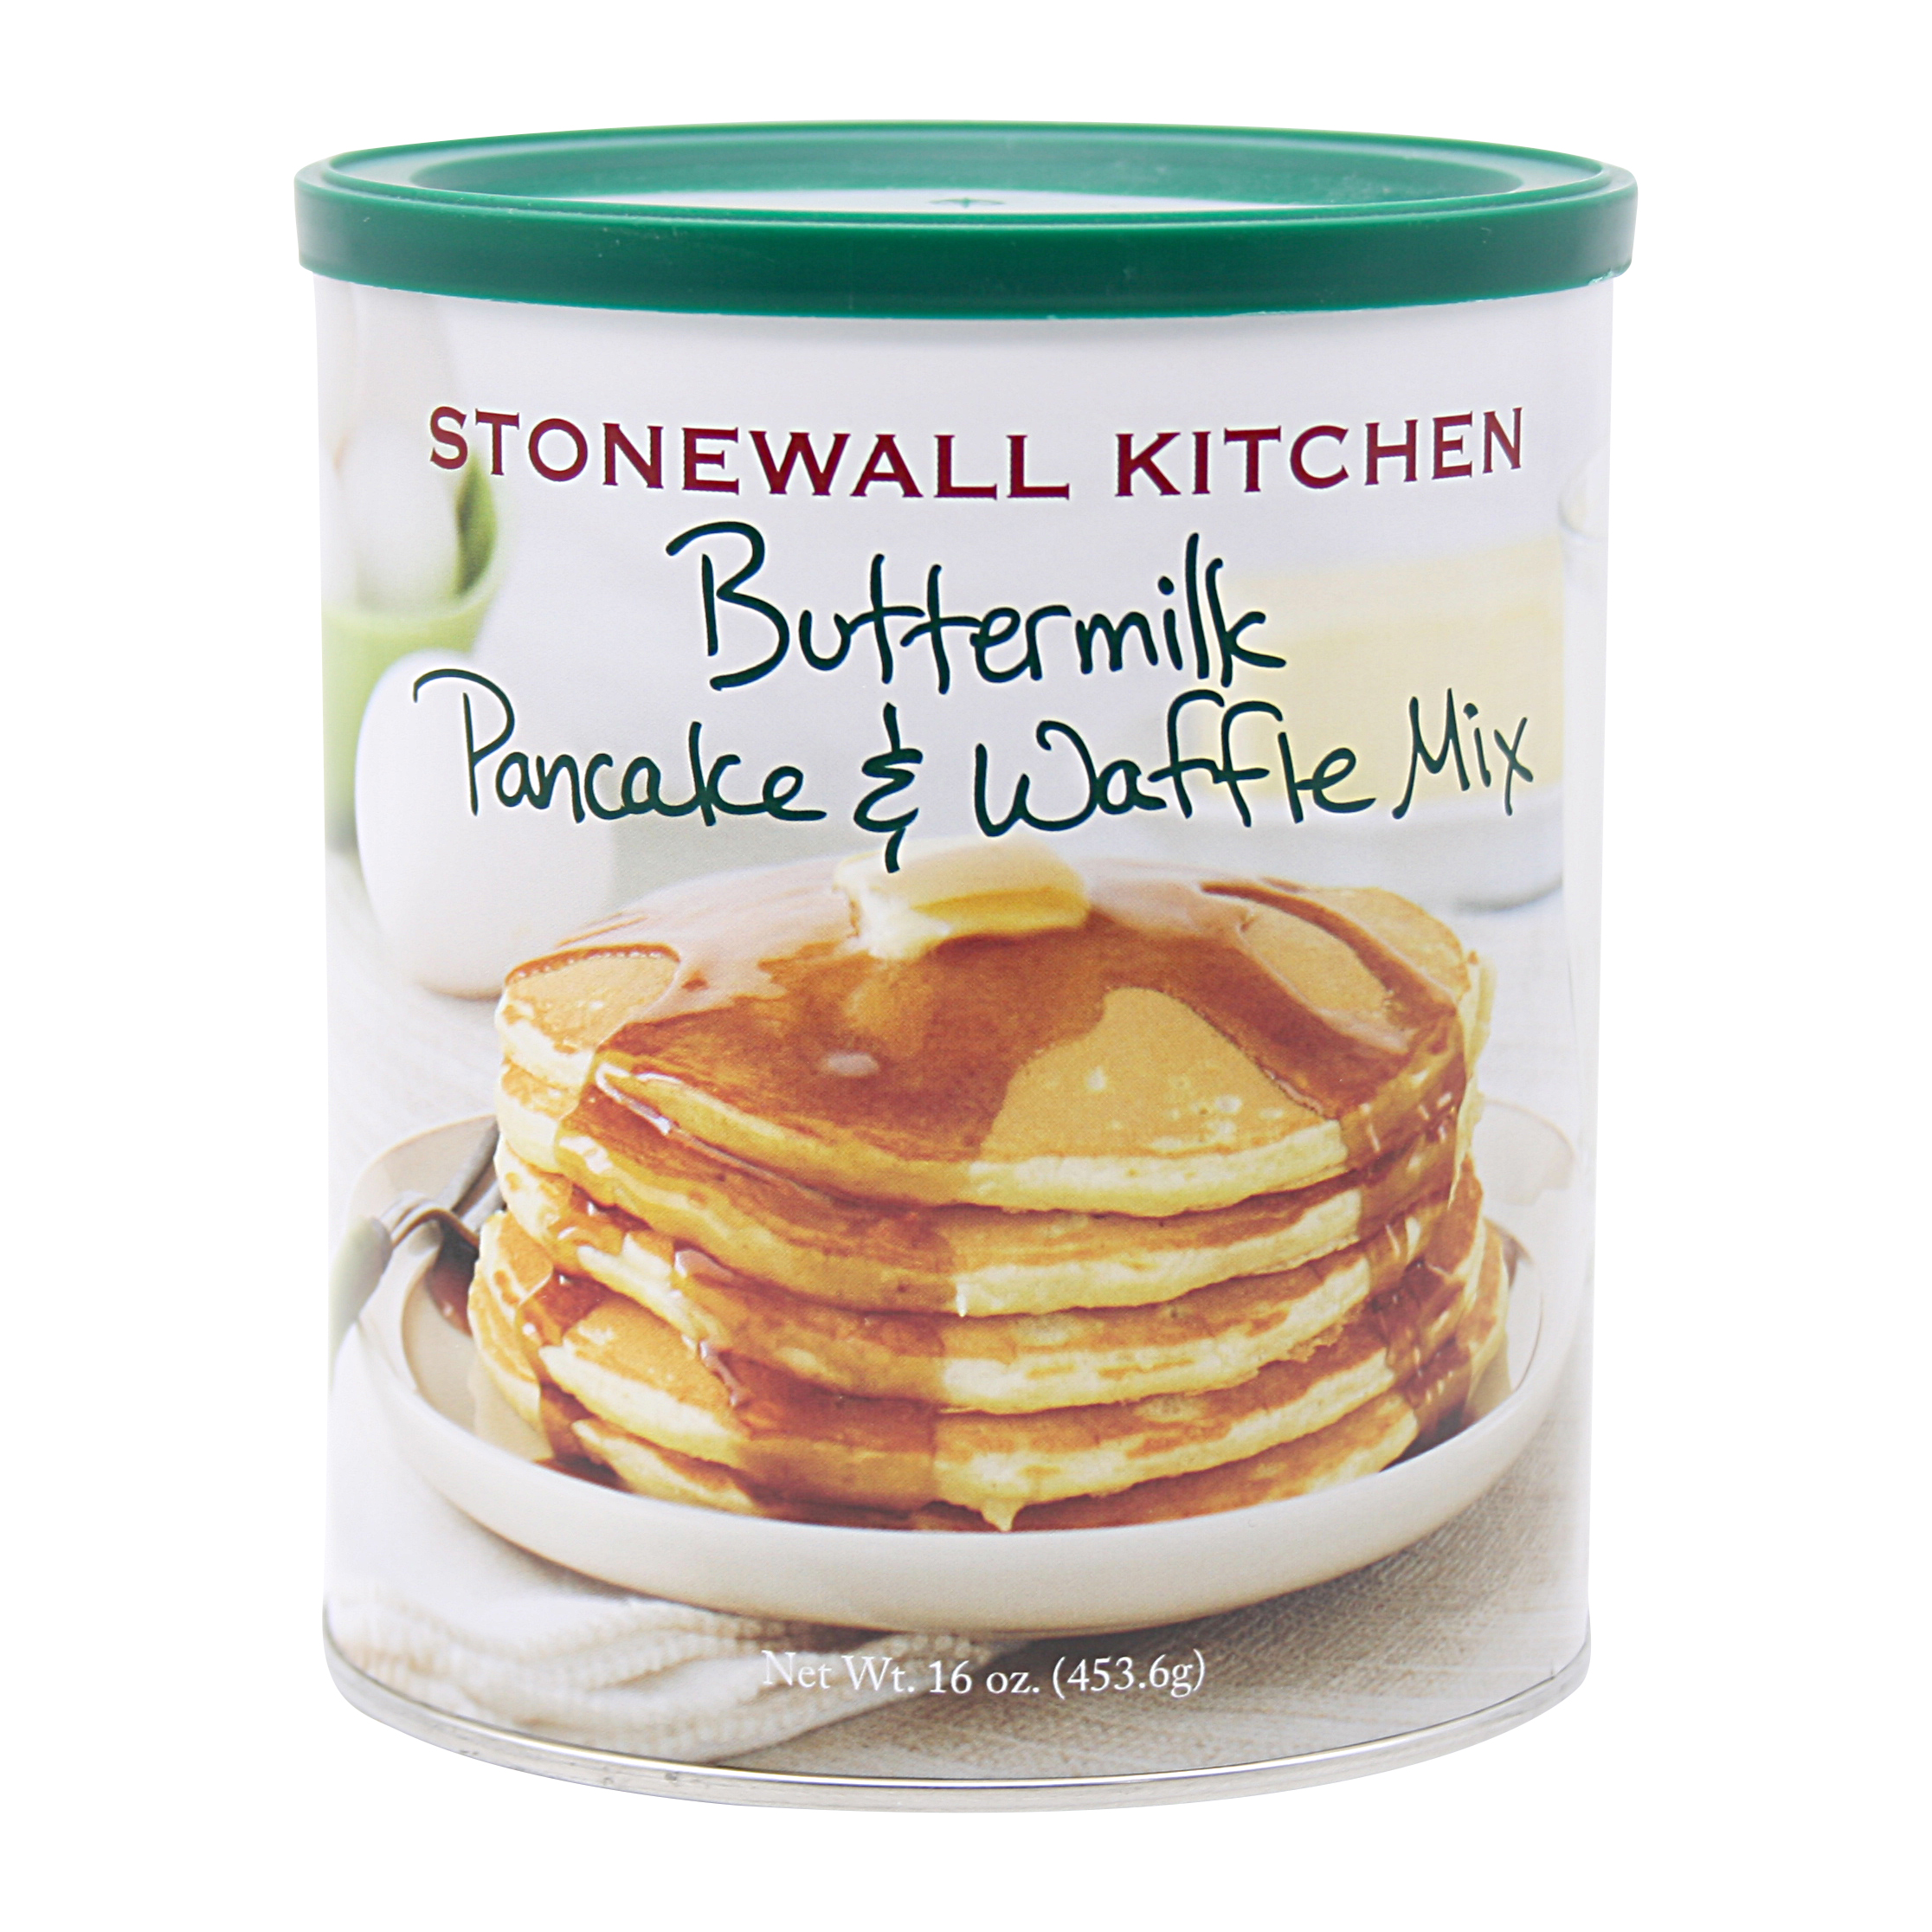 Stonewall Kitchen Pancake and Waffle Mix